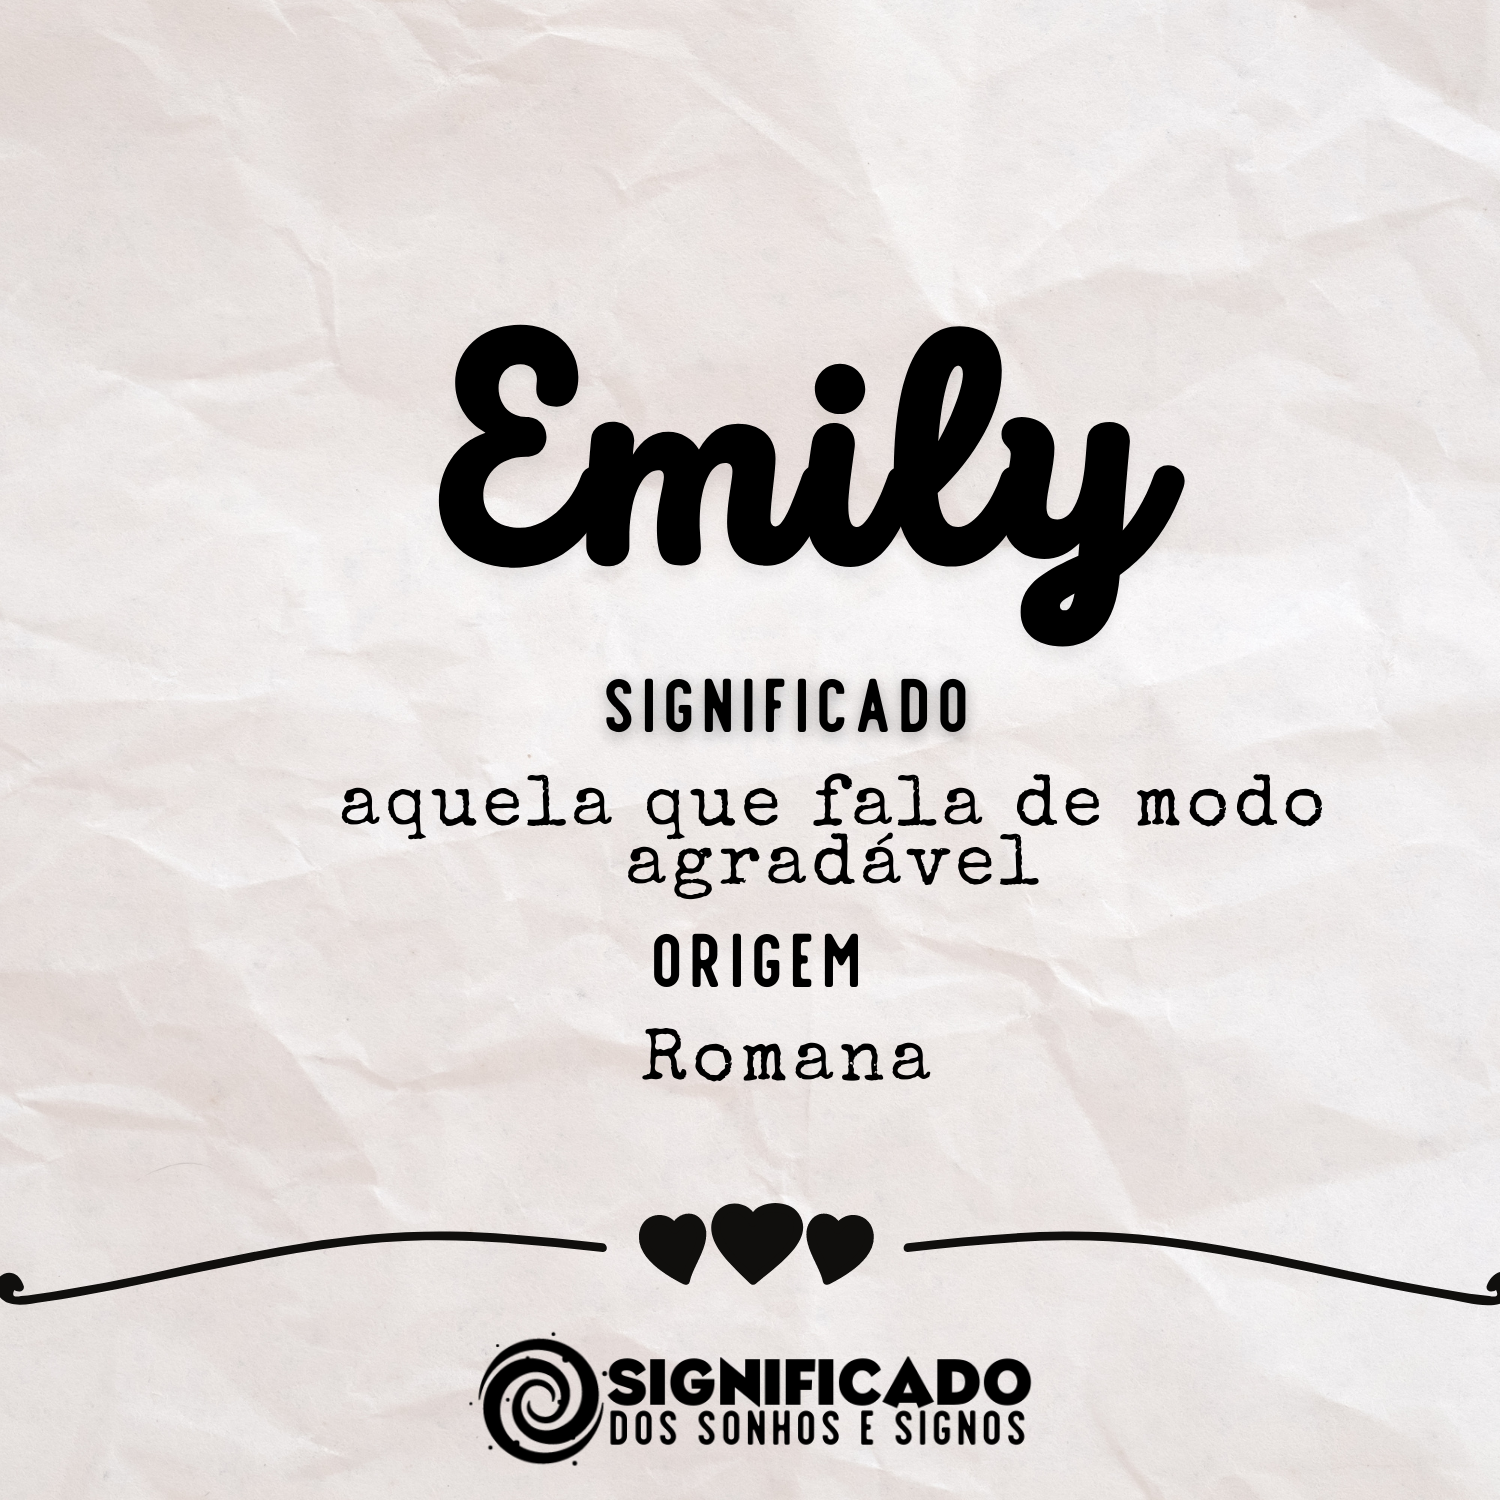  Emily - Betekenis van die naam, oorsprong en gewildheid